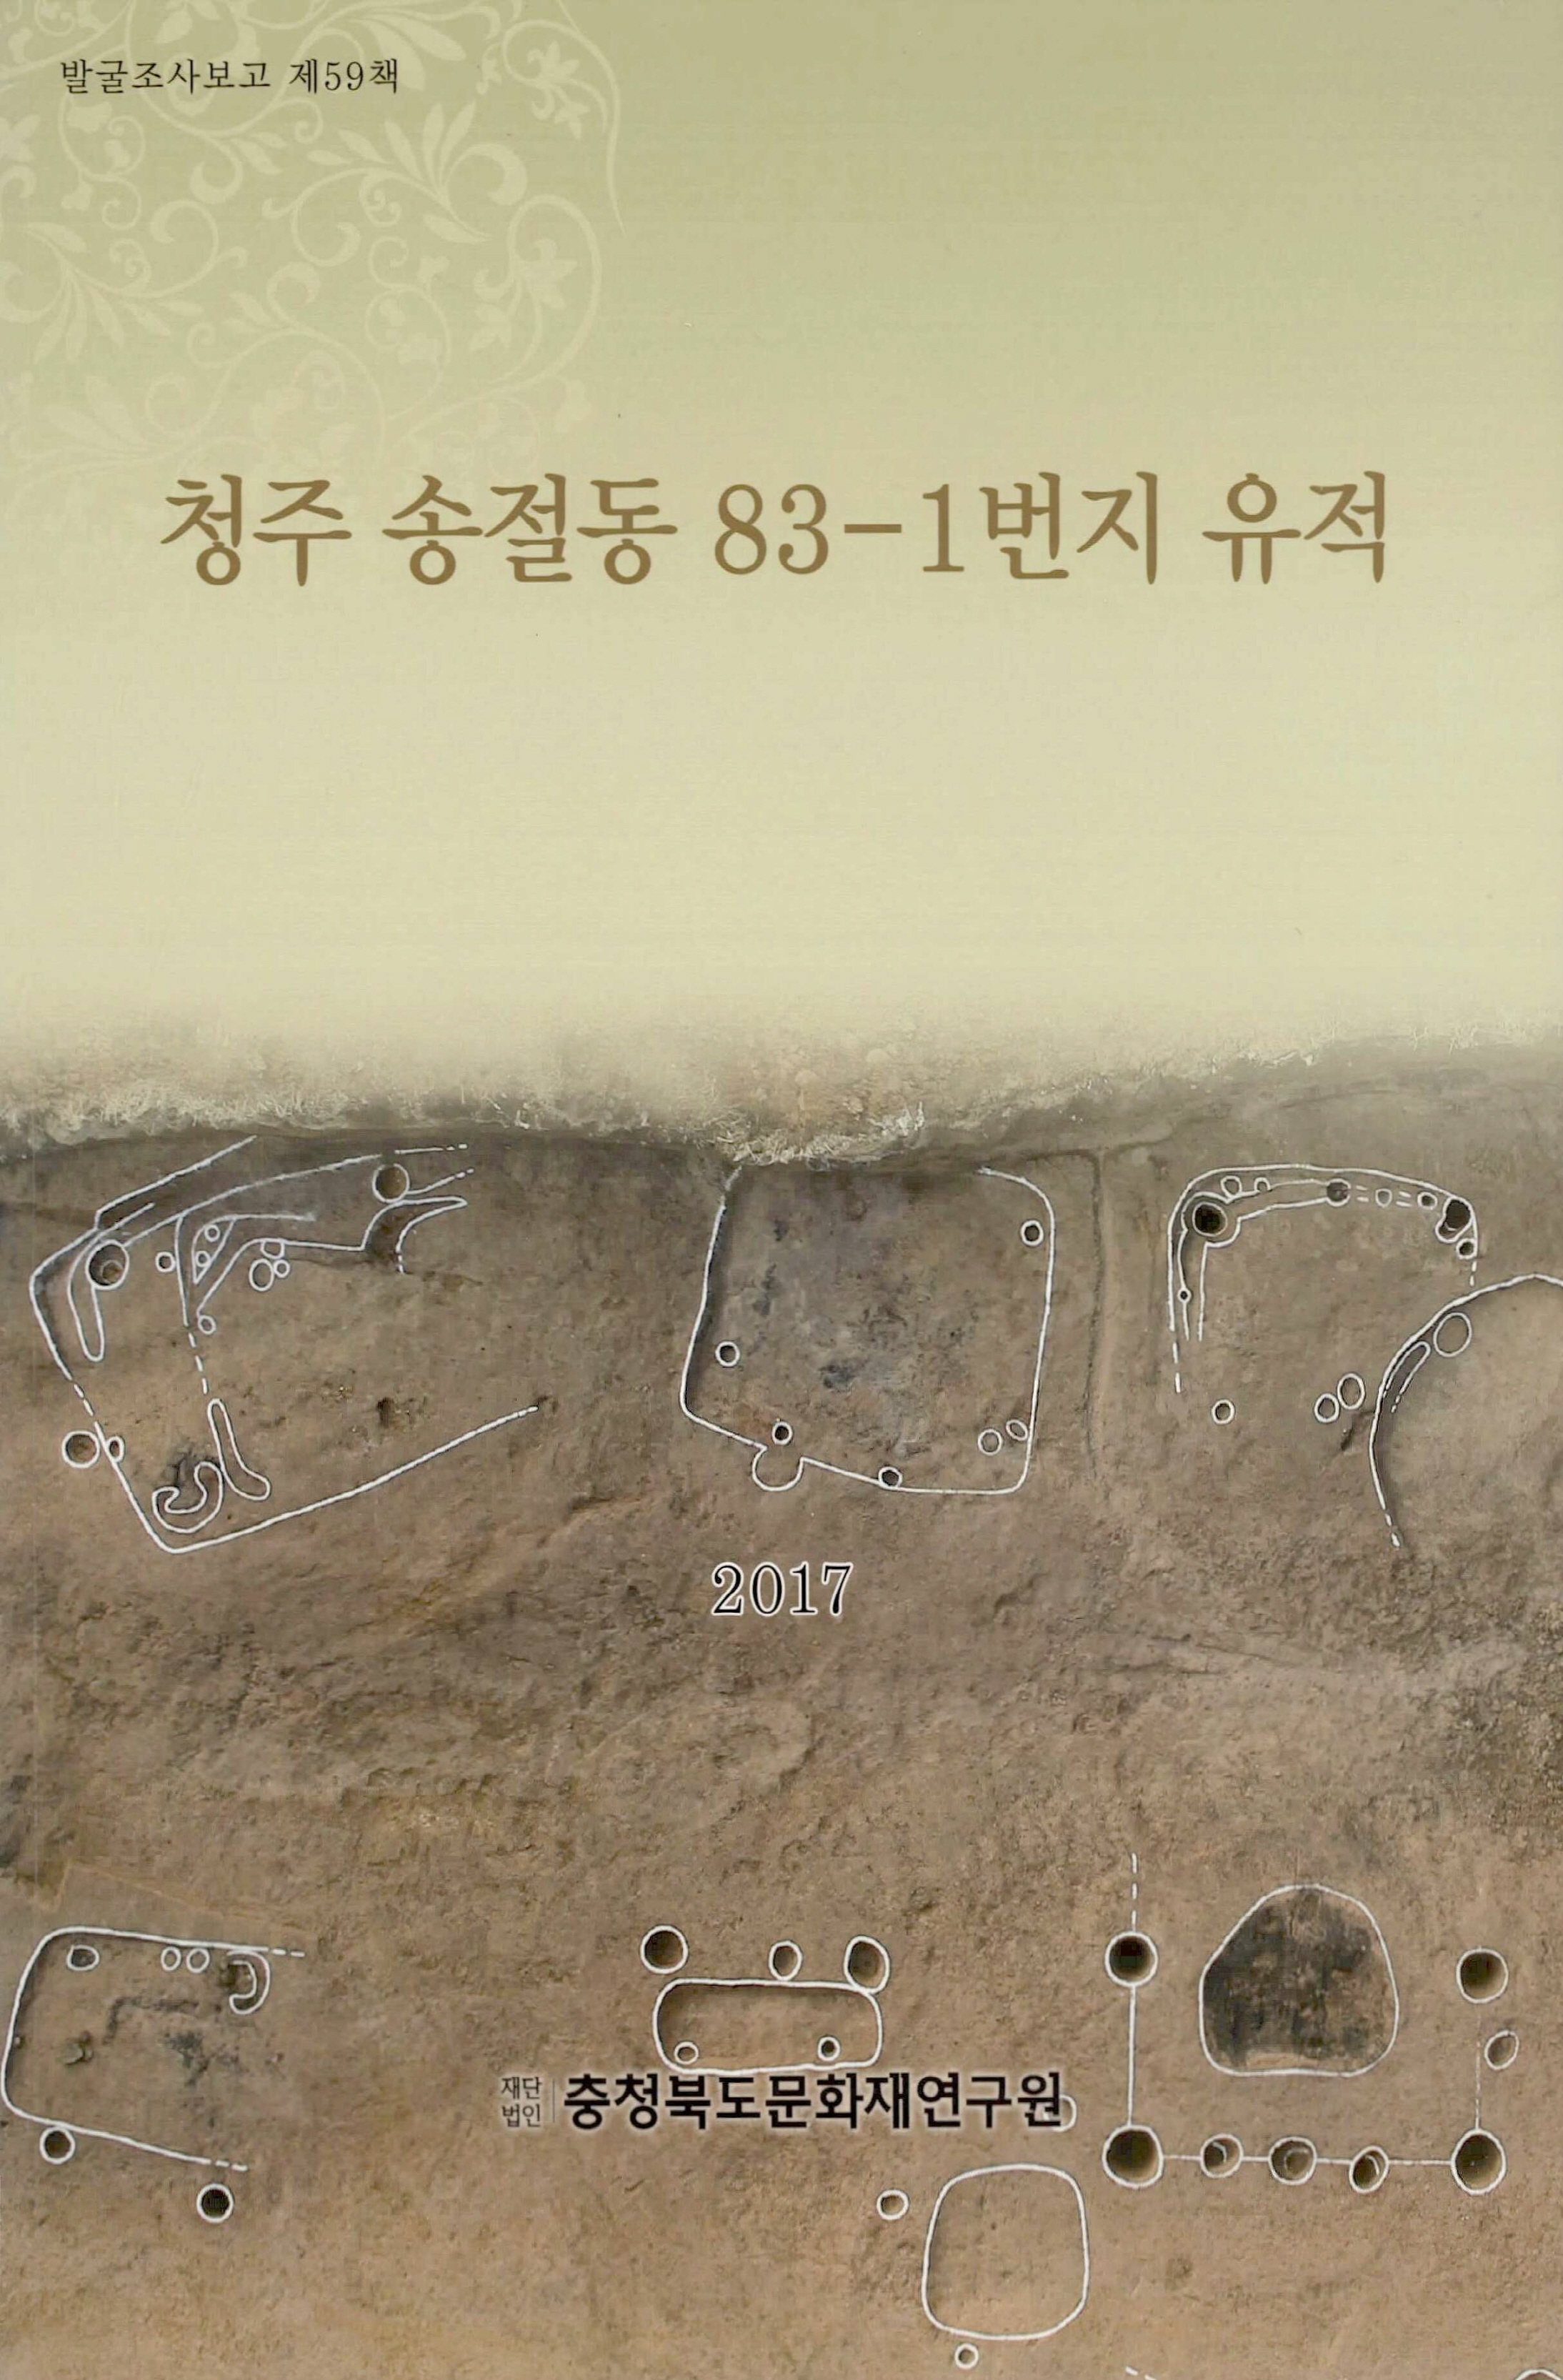 발굴조사보고 청주 송절동 83-1번지 유적